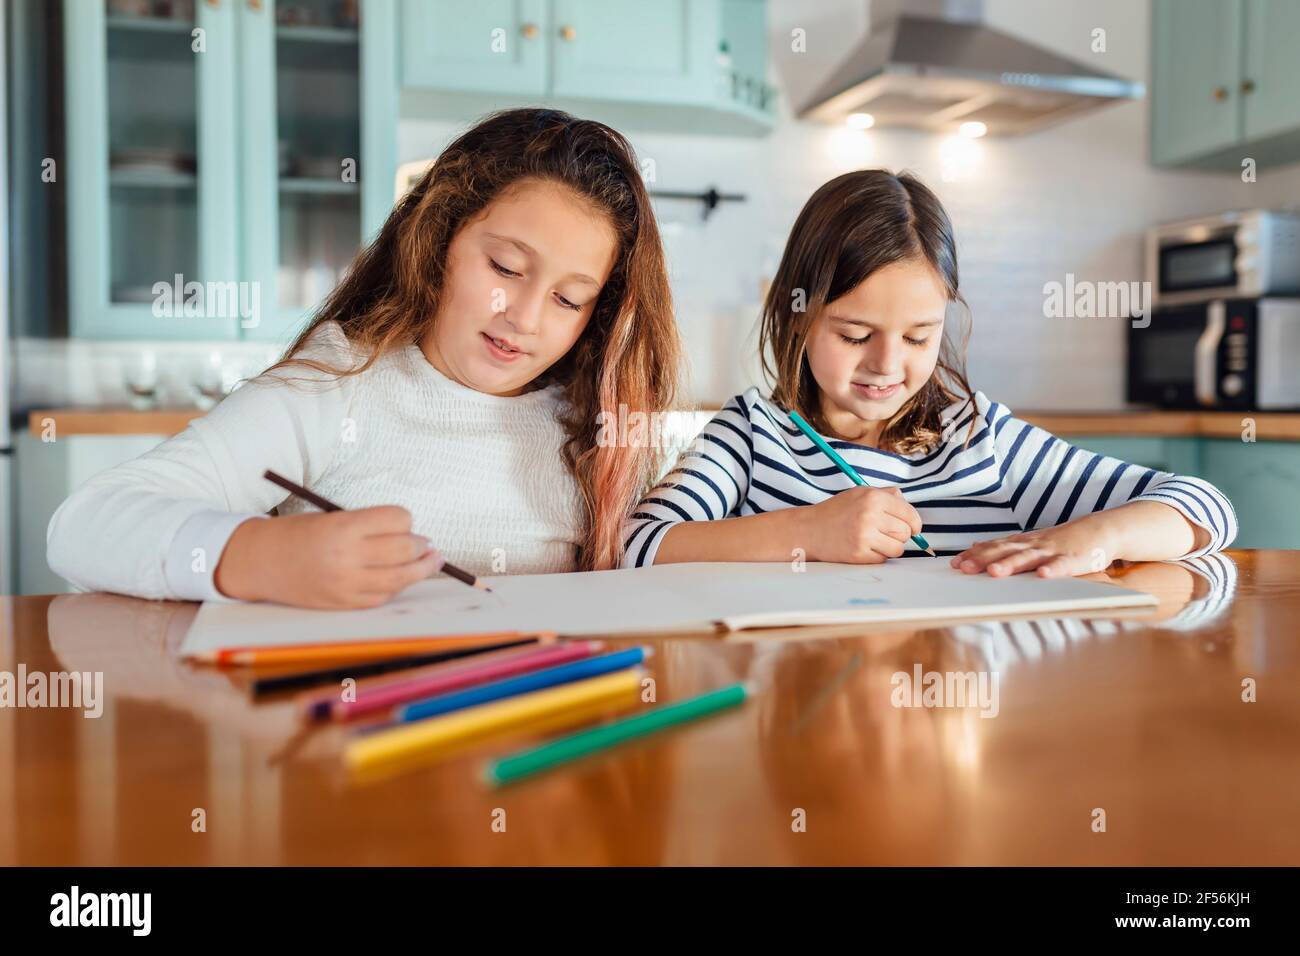 Les sœurs se colorent avec un crayon de couleur sur papier tout en étant assis table à manger dans la cuisine Banque D'Images